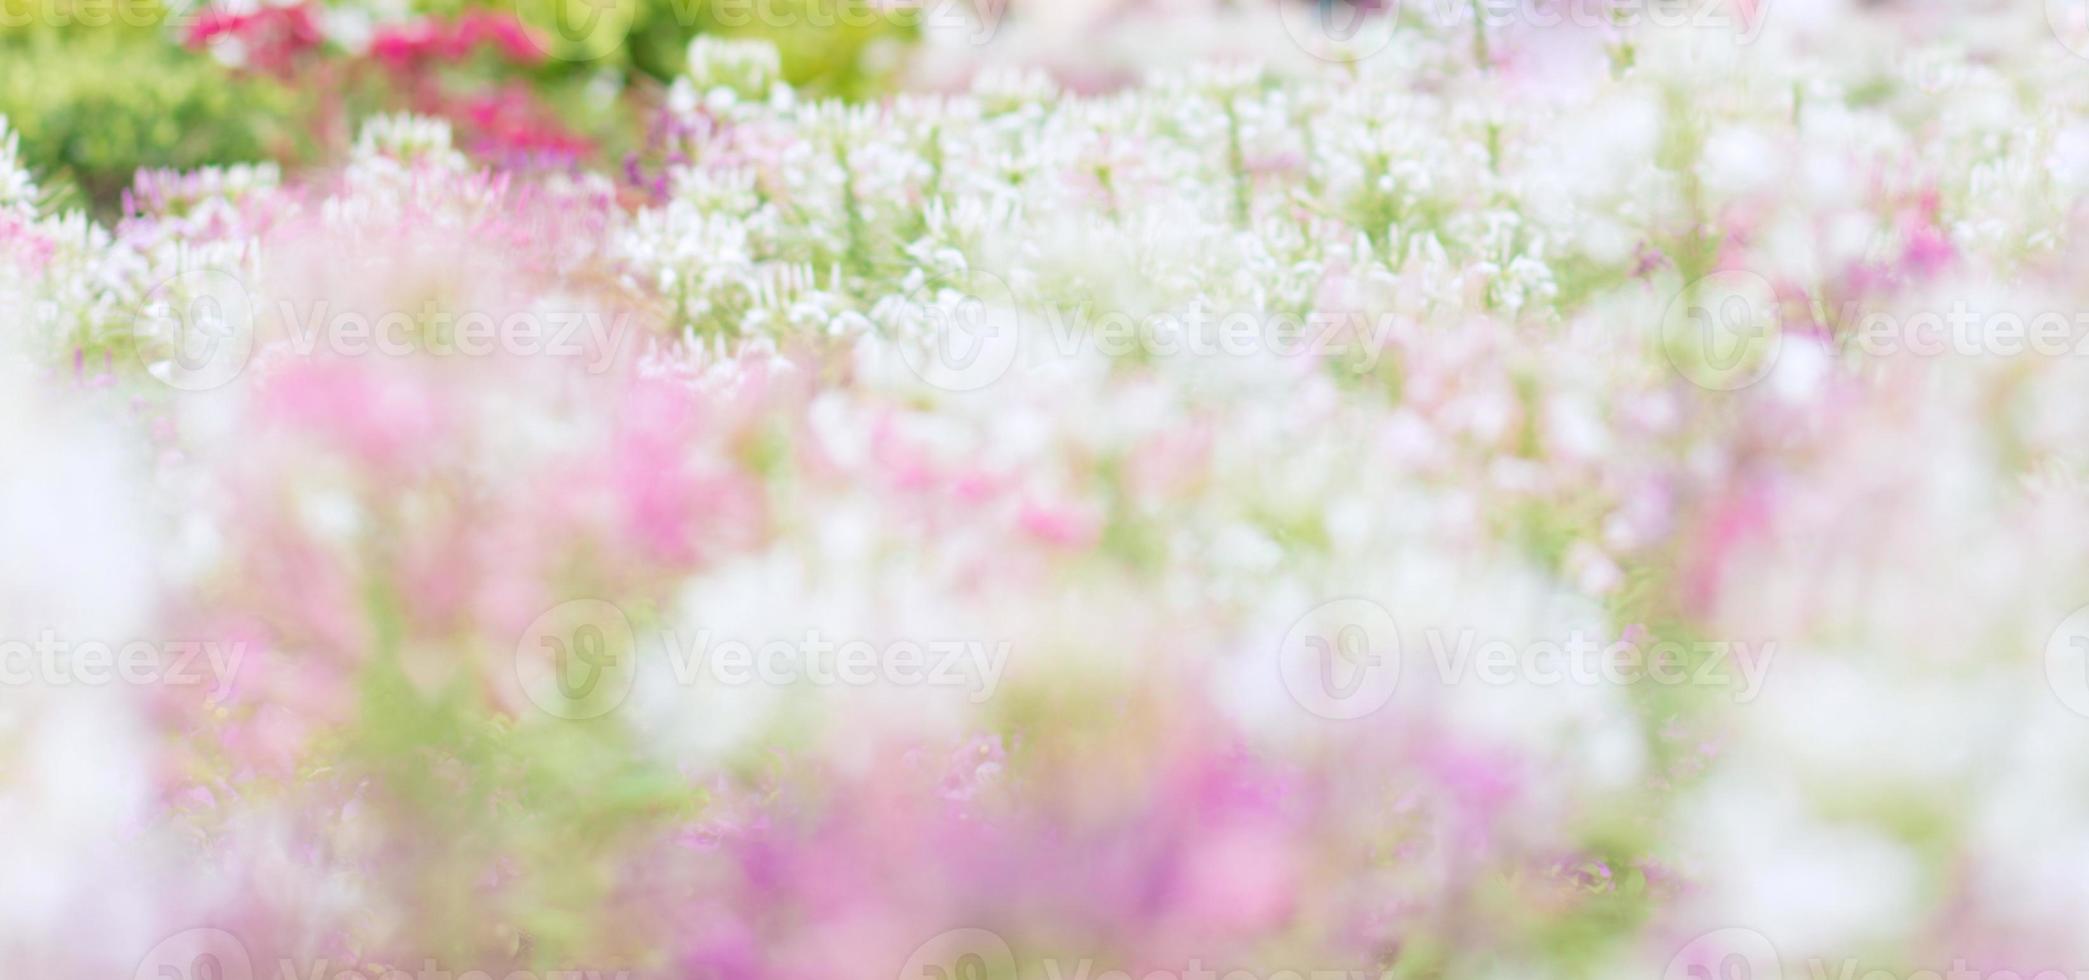 desfoque o bokeh de flores de flor rosa e branca com fundo de licença verde. foto